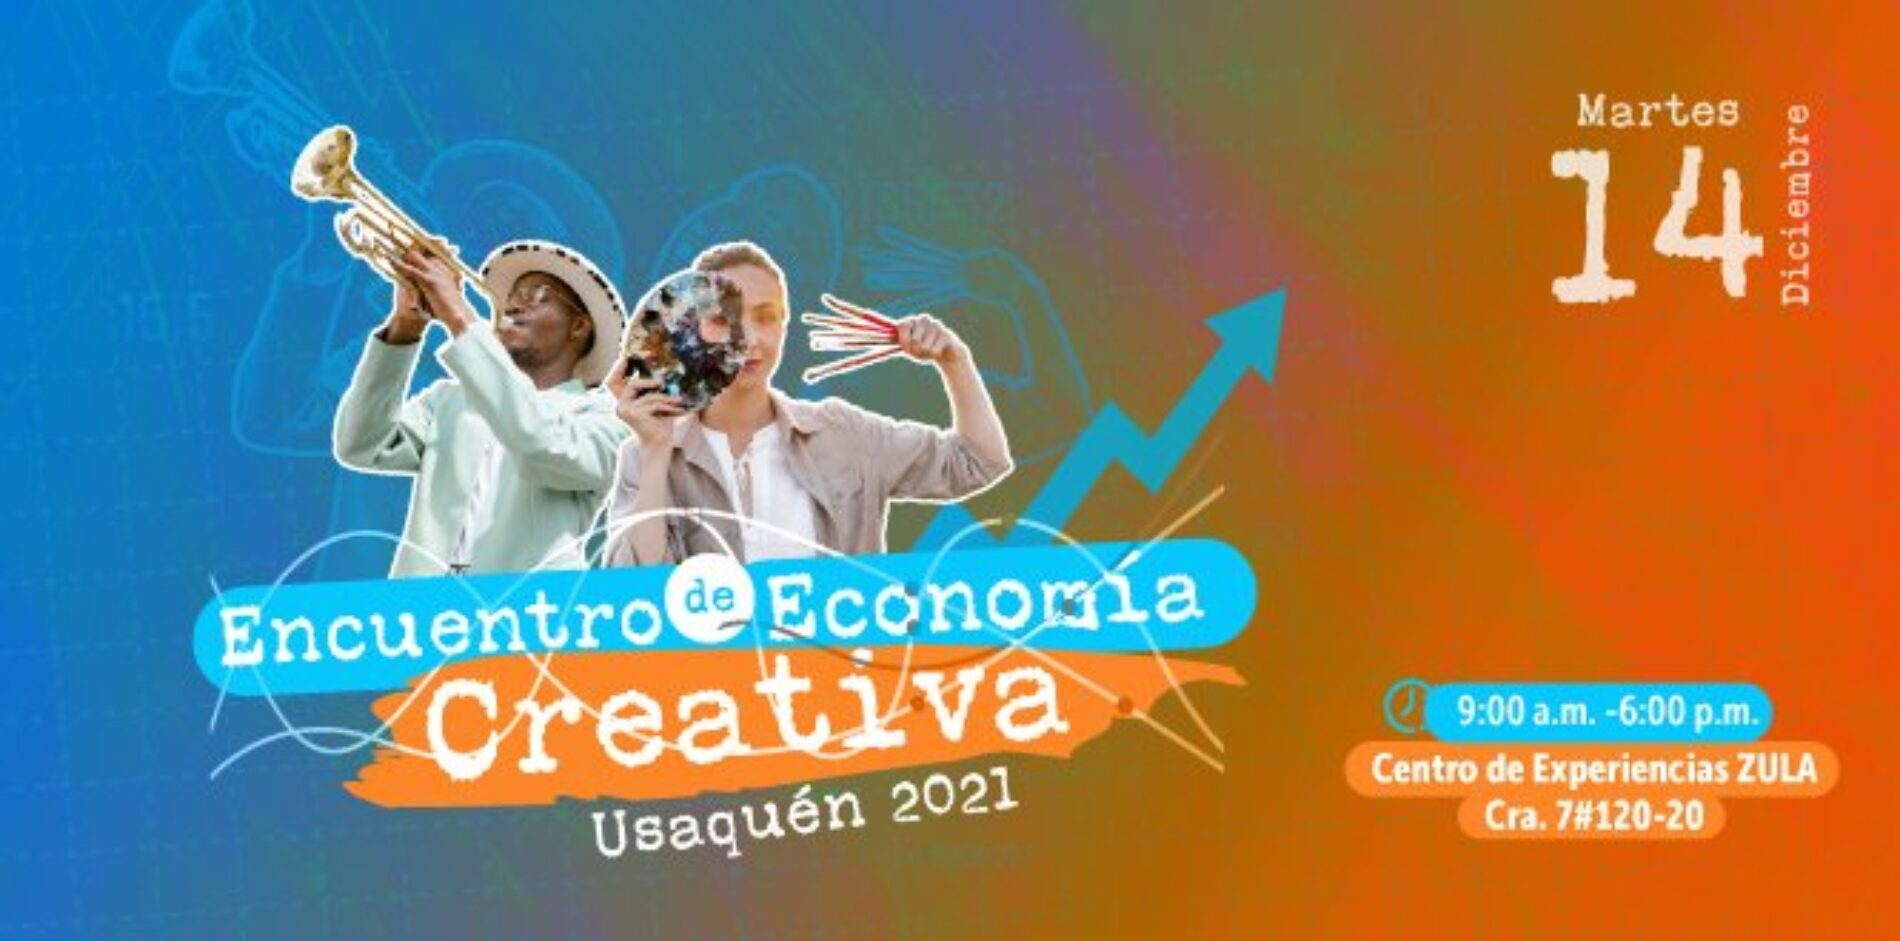 PARTICIPA EN EL PRIMER ENCUENTRO DE ECONOMÍAS CREATIVAS USAQUÉN 2021